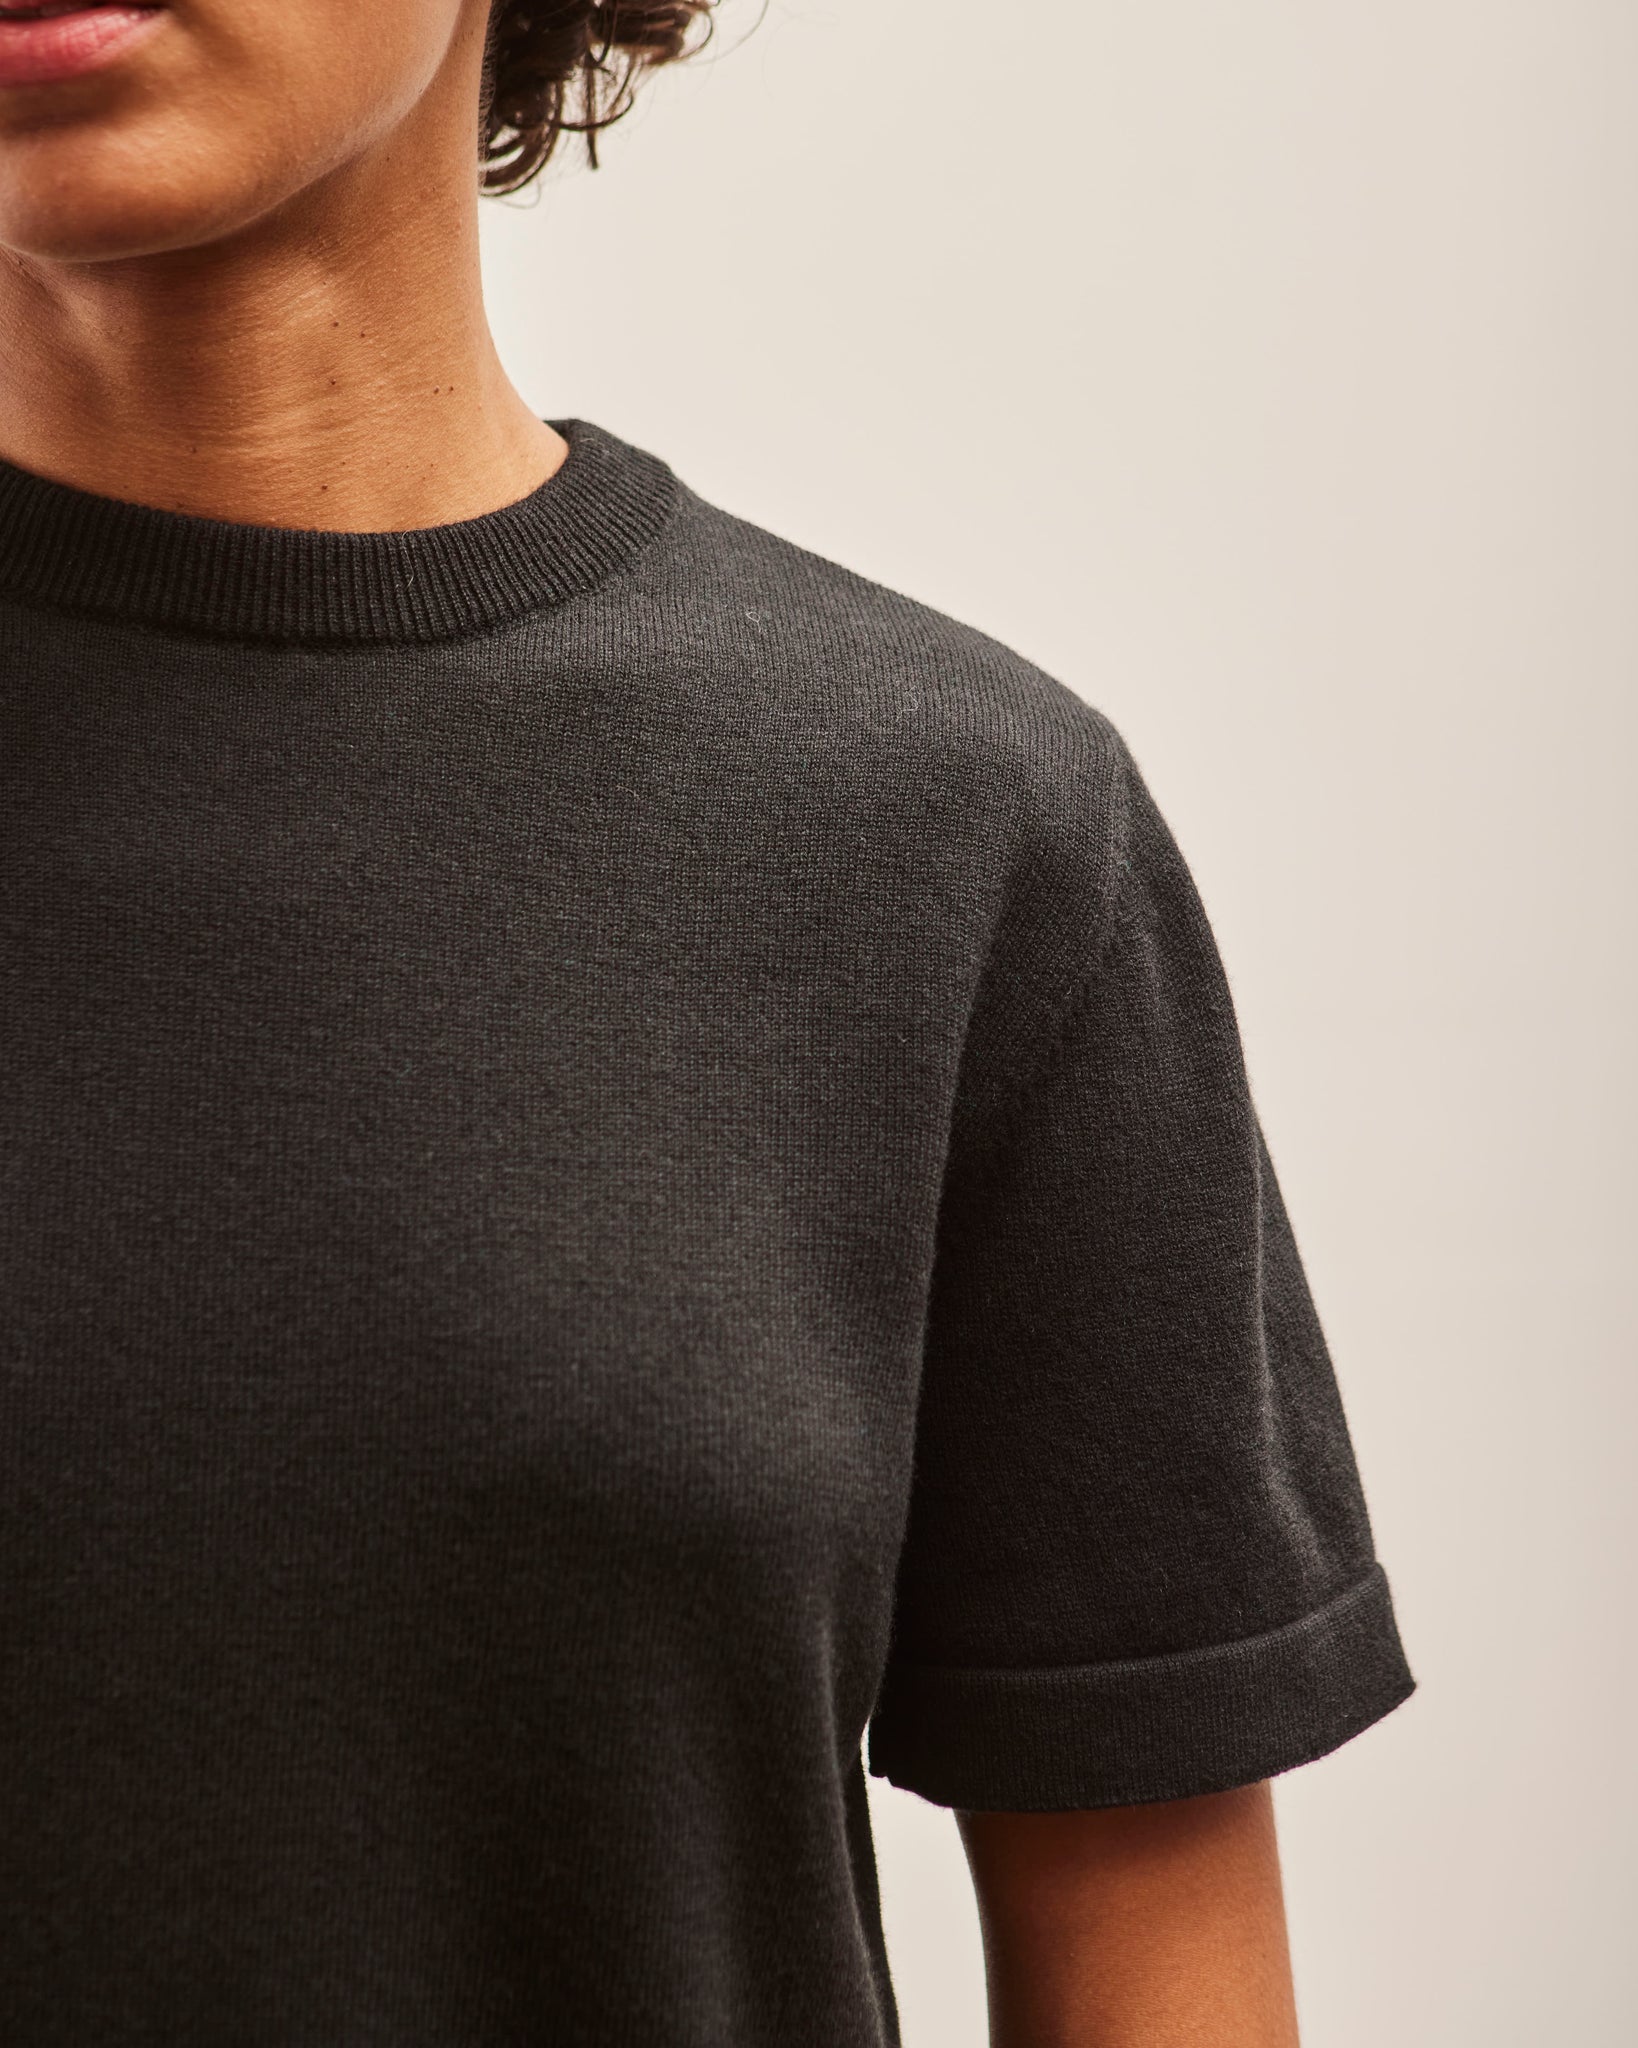 Cordera Merino Wool T-Shirt, Black